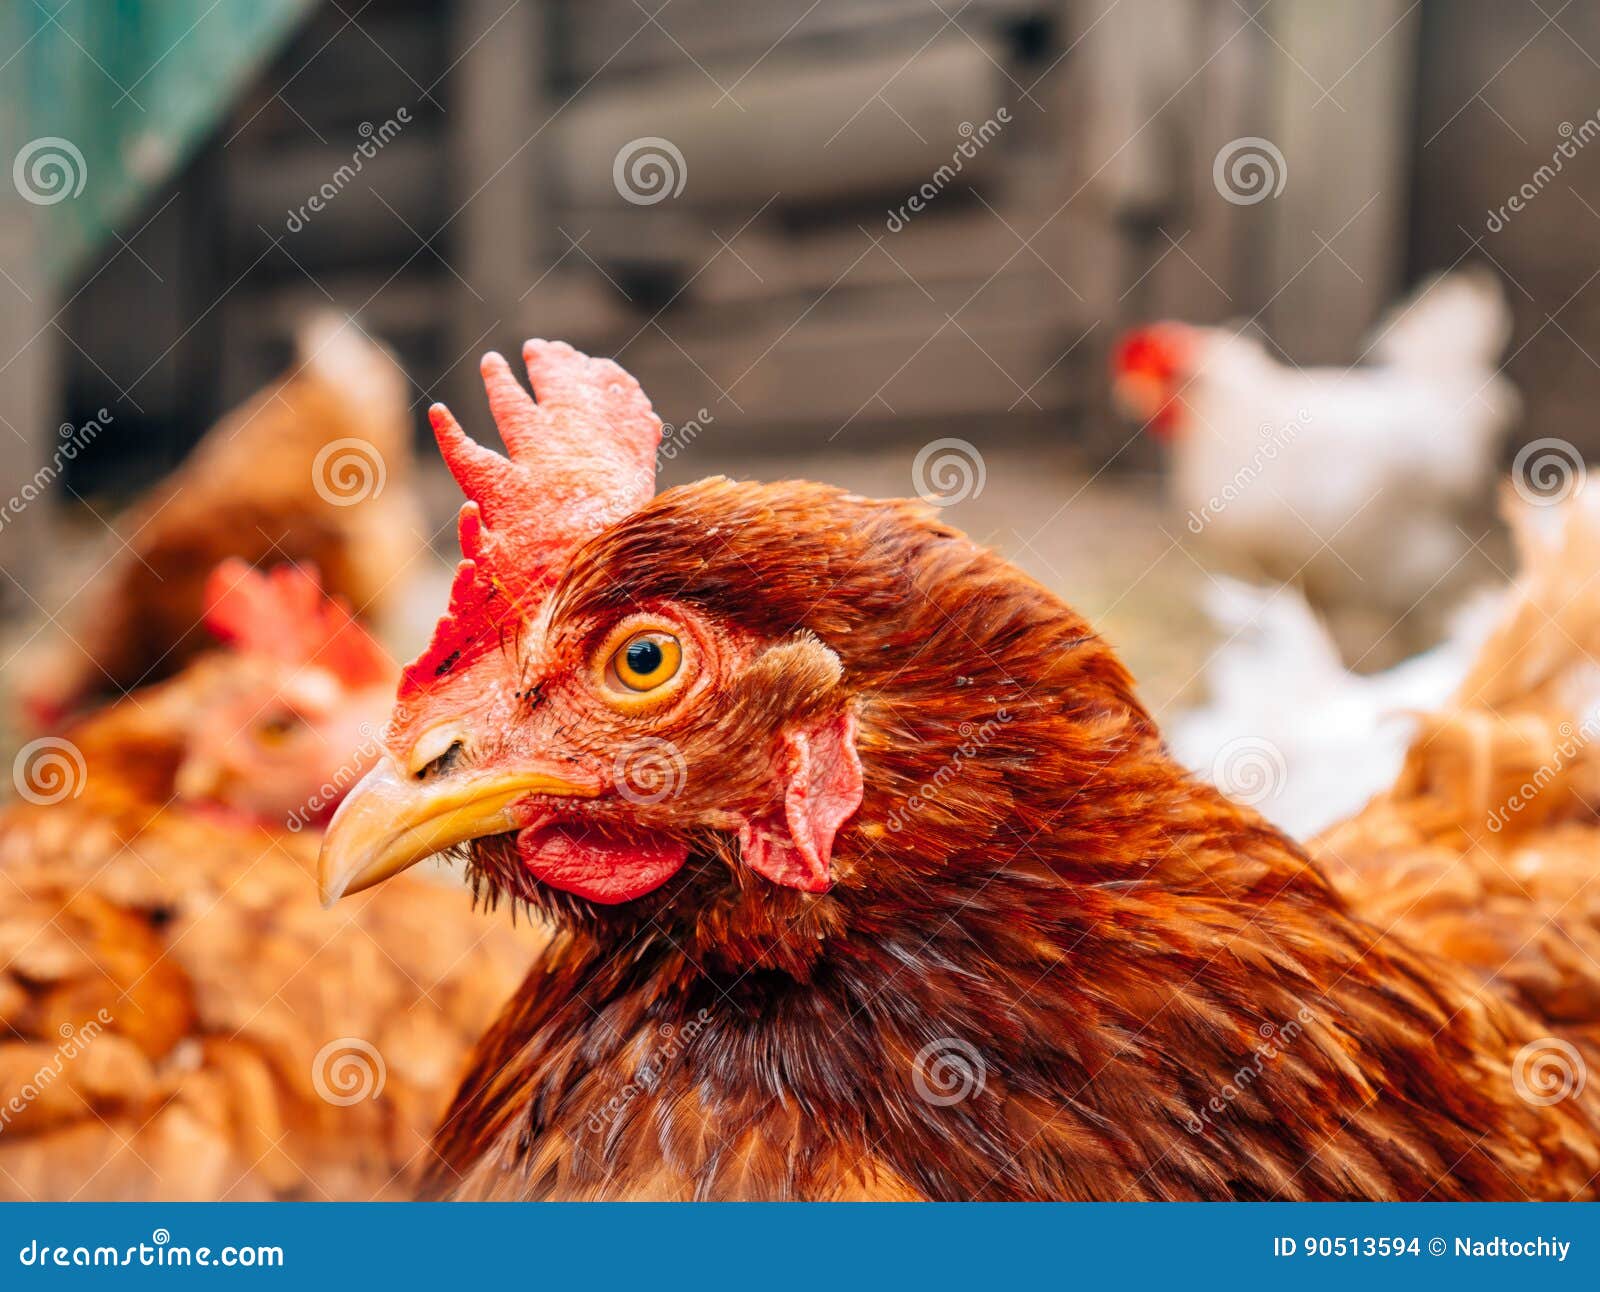 Goed-verzorgde rode kippen in het dorp Kippen die op landelijk lopen. Goed-verzorgde rode kippen in het dorp Kippen die op landelijke werf lopen Gelukkig gevogelte